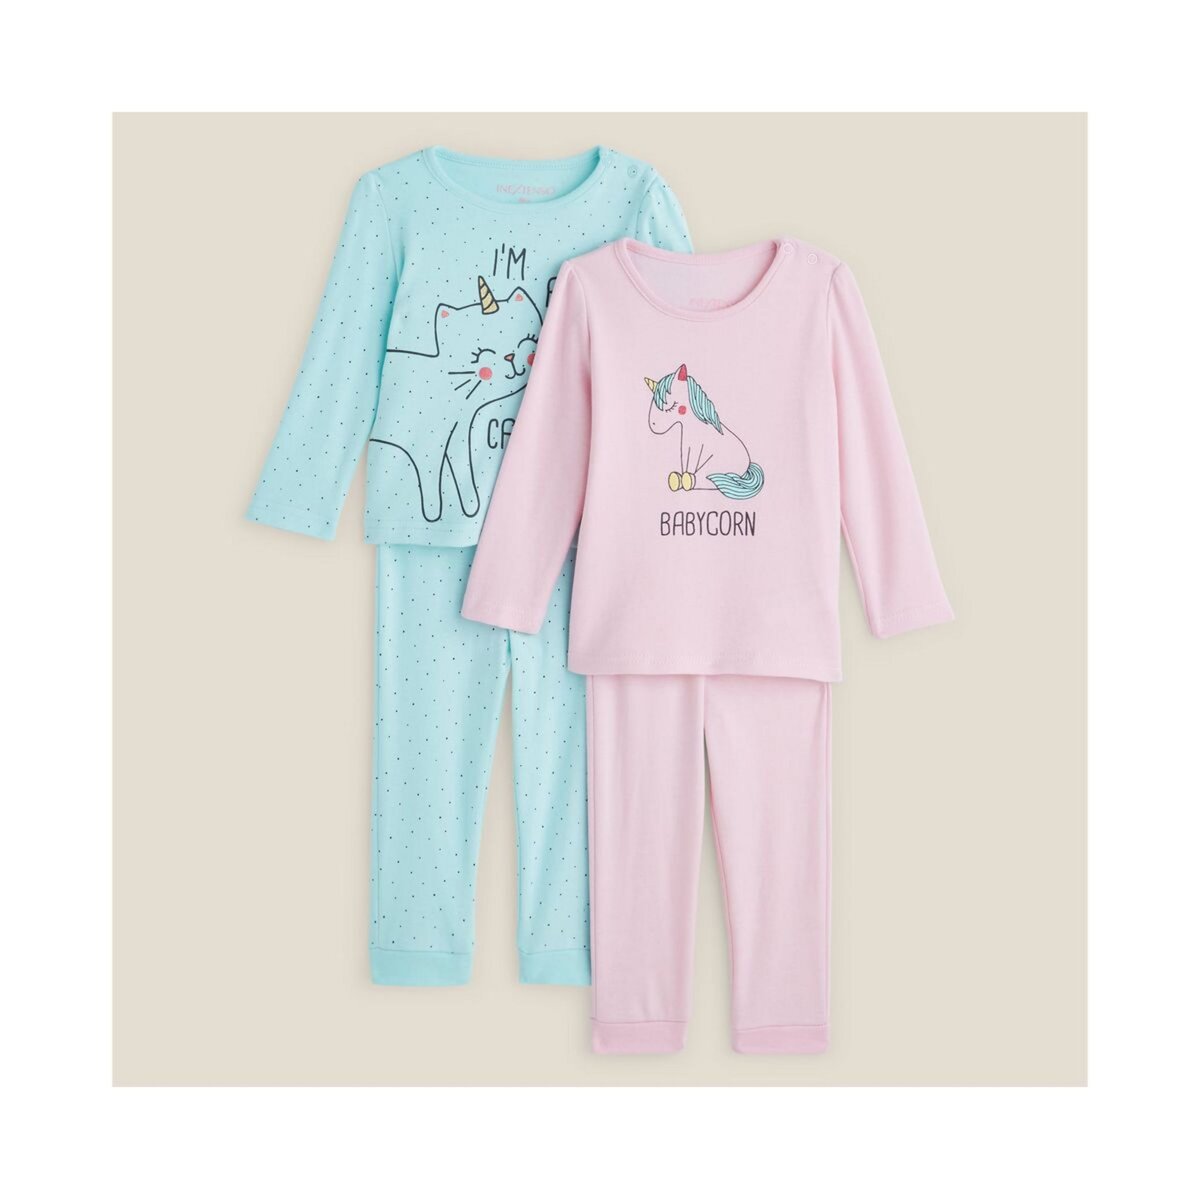 IN EXTENSO Lot de 2 pyjamas chat licorne bébé fille 